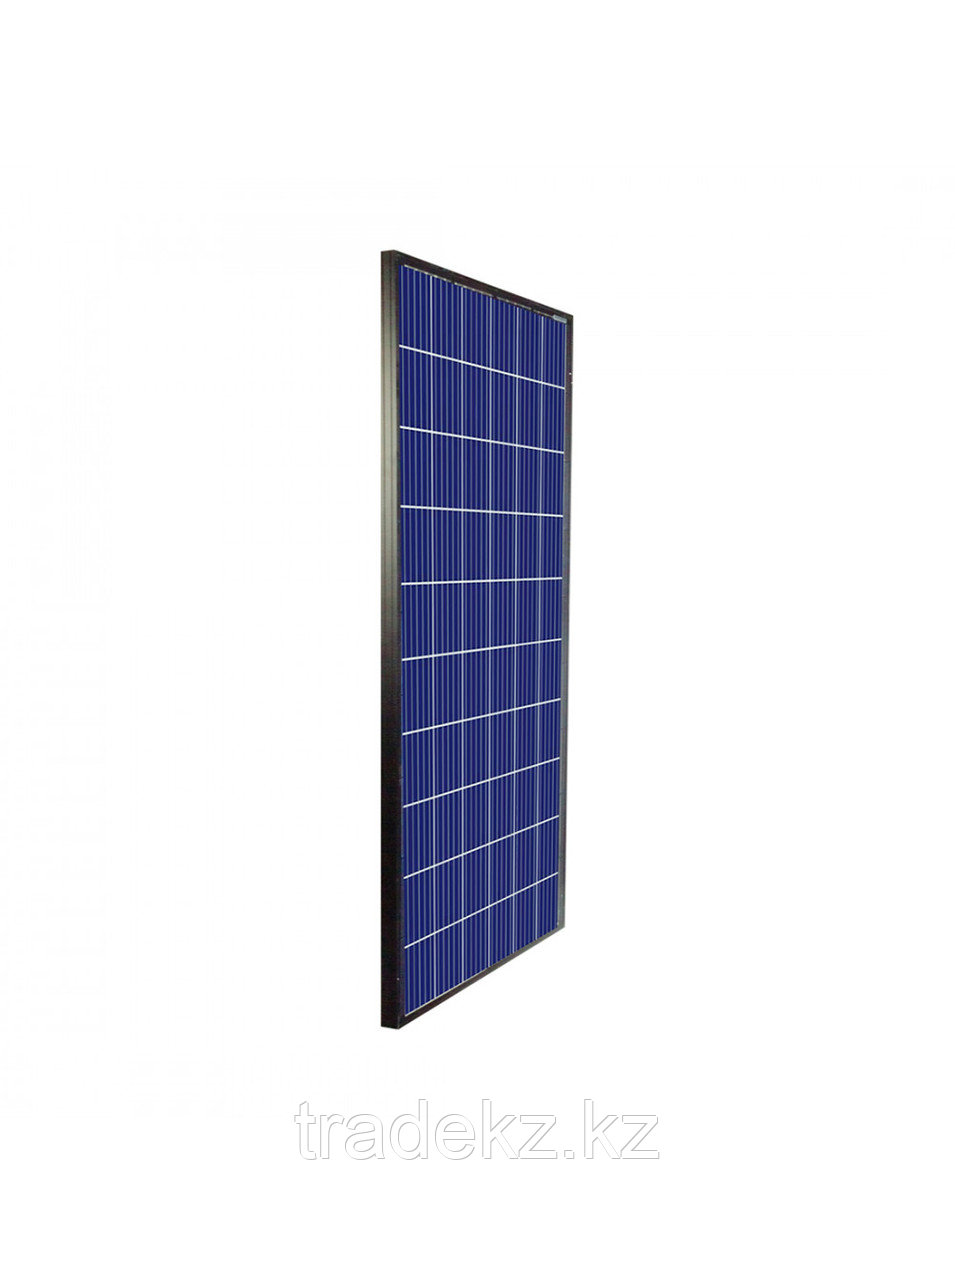 Солнечная панель SVC PC-340, мощность 340 Вт, напряжение 24В, без контроллера